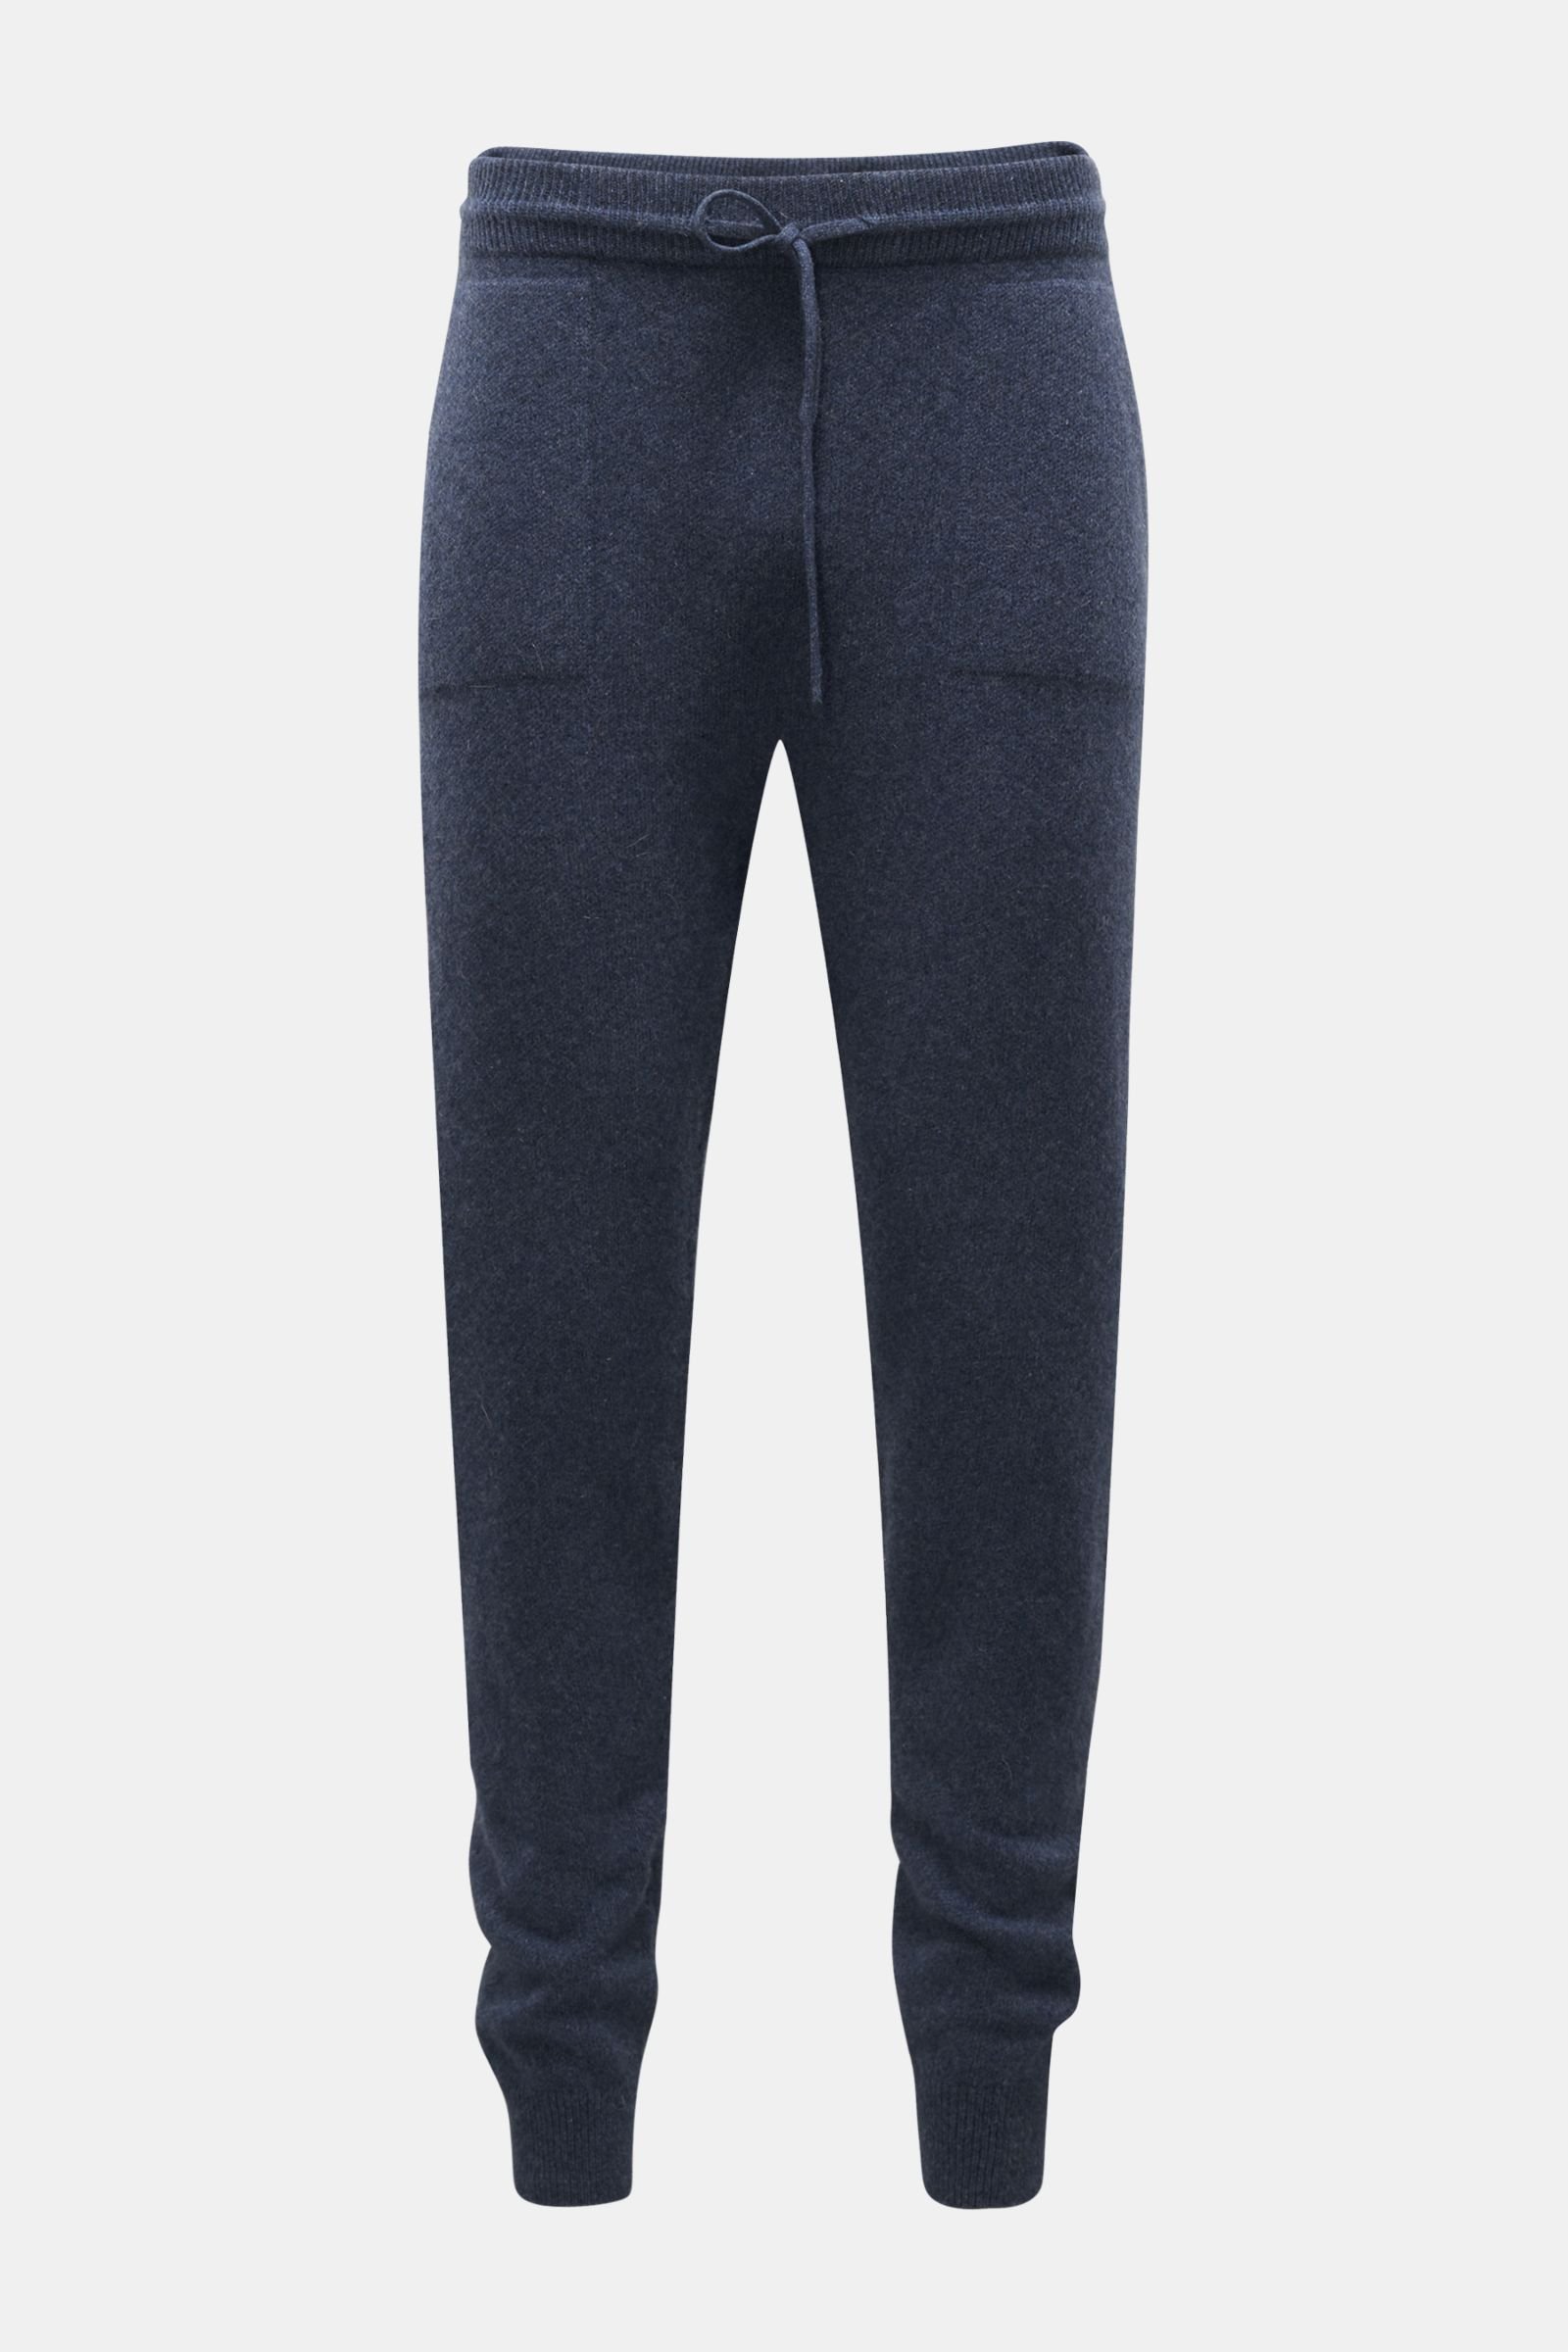 VON BRAUN cashmere jogger pants grey-blue